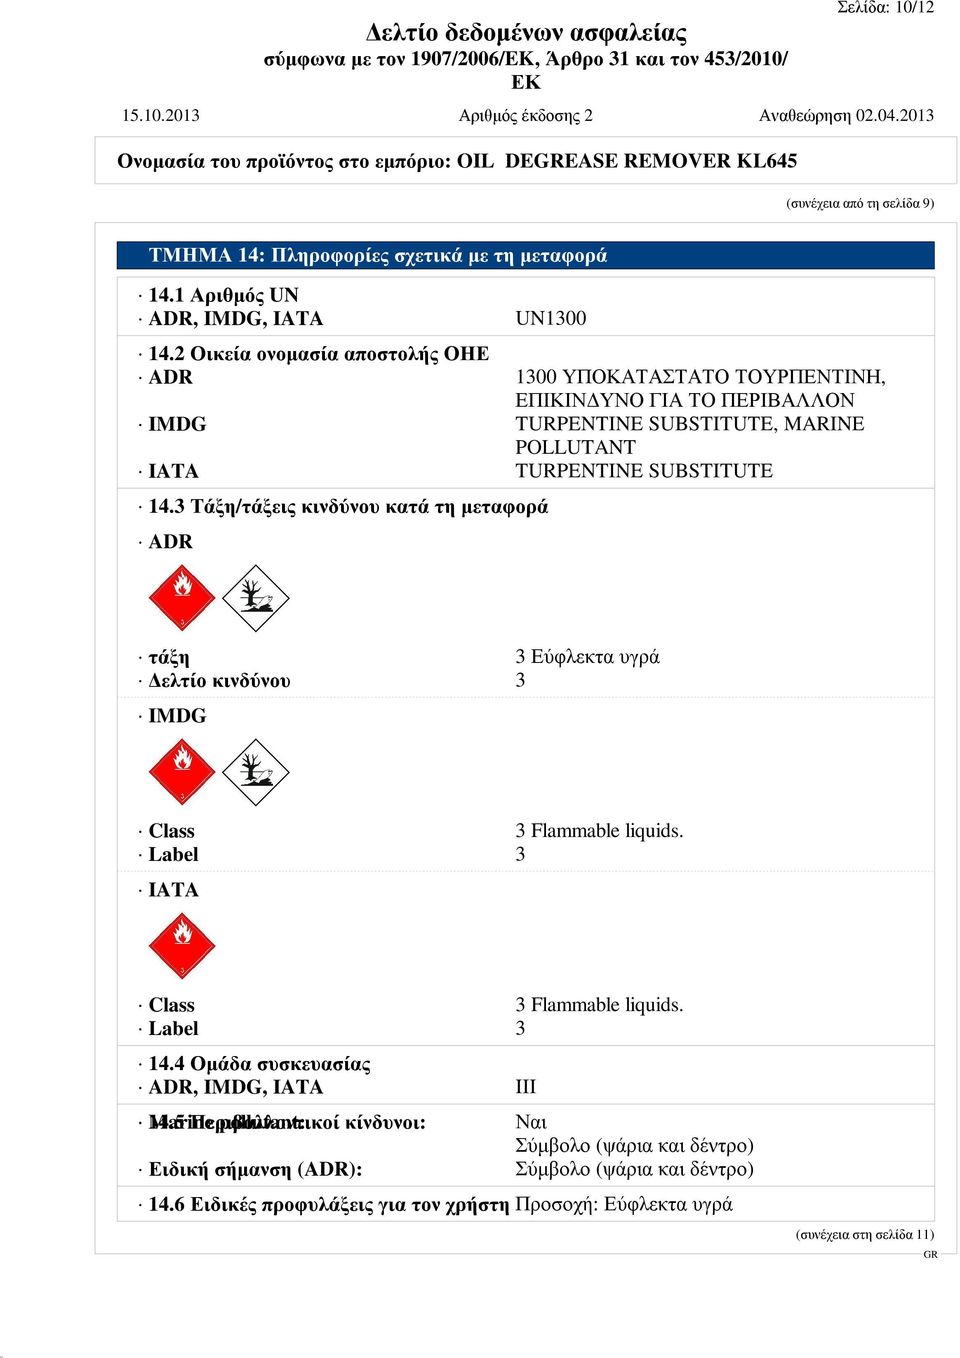 3 Τάξη/τάξεις κινδύνου κατά τη μεταφορά ADR τάξη 3 Εύφλεκτα υγρά Δελτίο κινδύνου 3 IMDG Class 3 Flammable liquids. Label 3 IATA Class 3 Flammable liquids. Label 3 14.